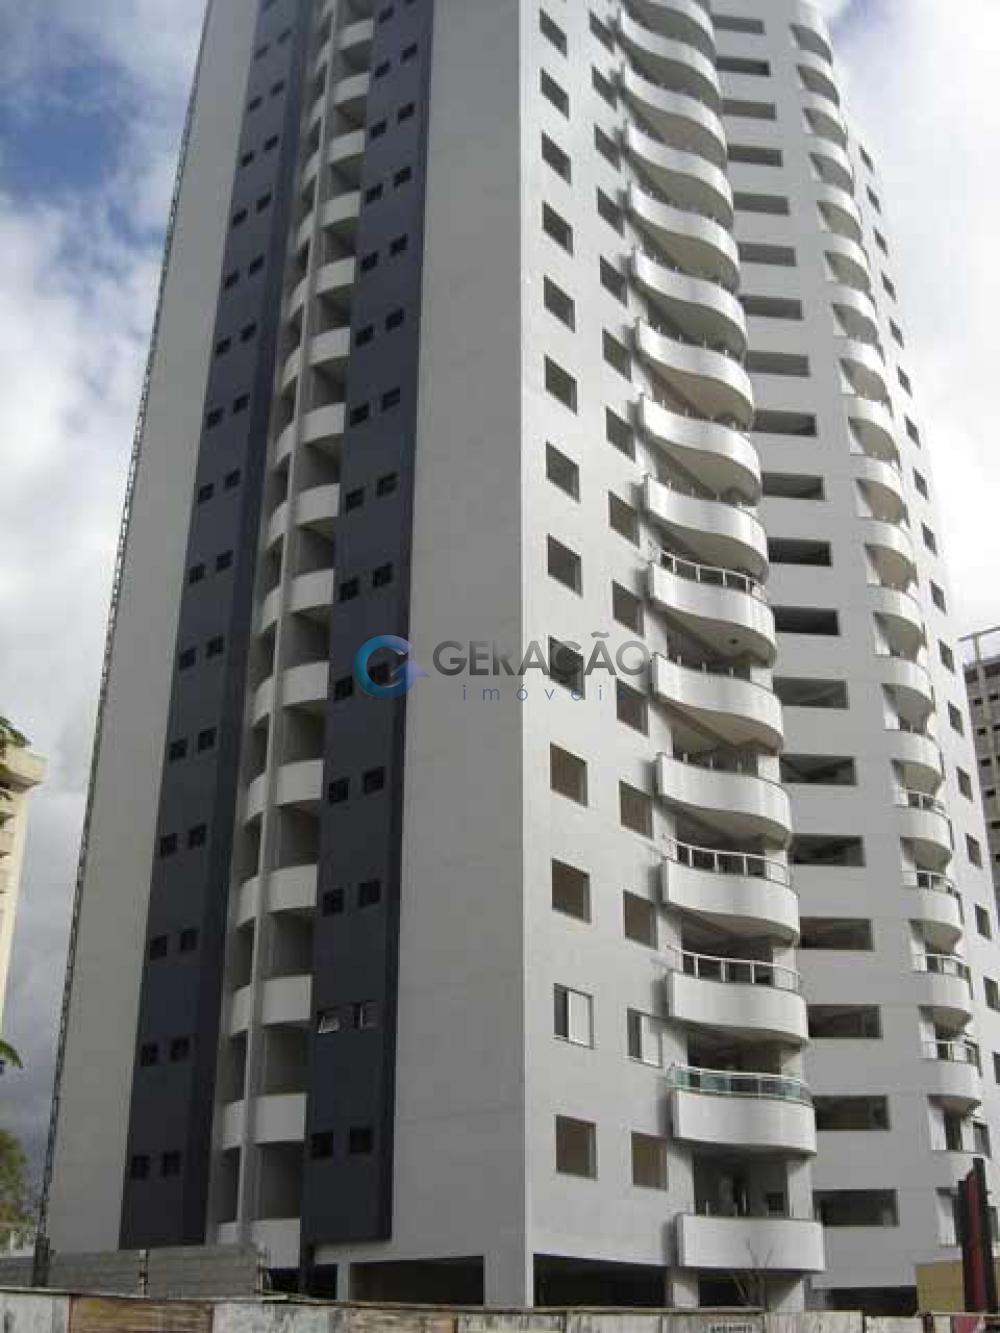 Comprar Apartamento / Padrão em São José dos Campos R$ 1.100.000,00 - Foto 1